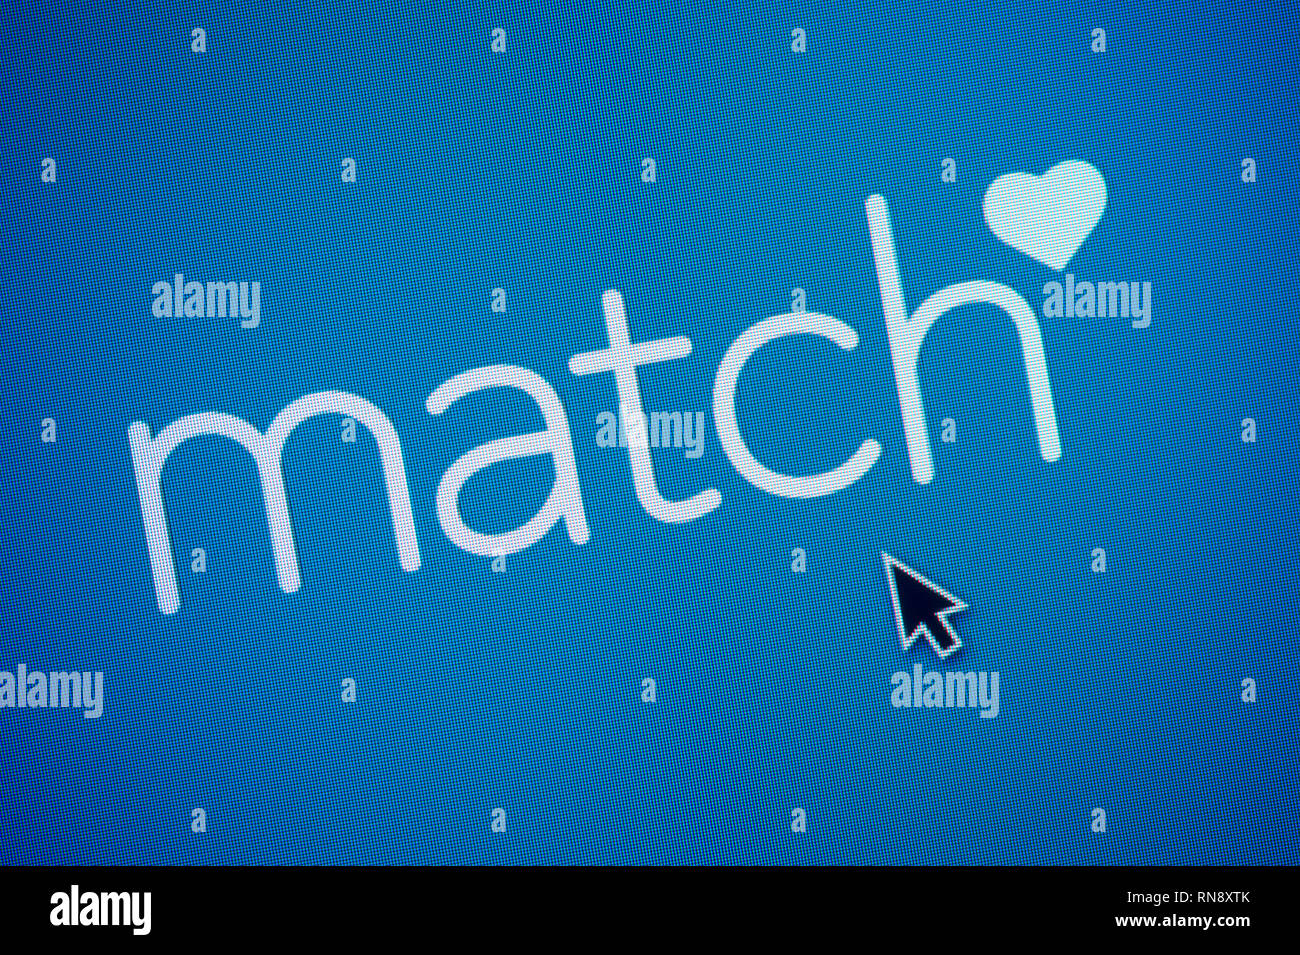 El logotipo de Match.com es visto en una pantalla de ordenador junto con el cursor del ratón (uso Editorial solamente) Foto de stock